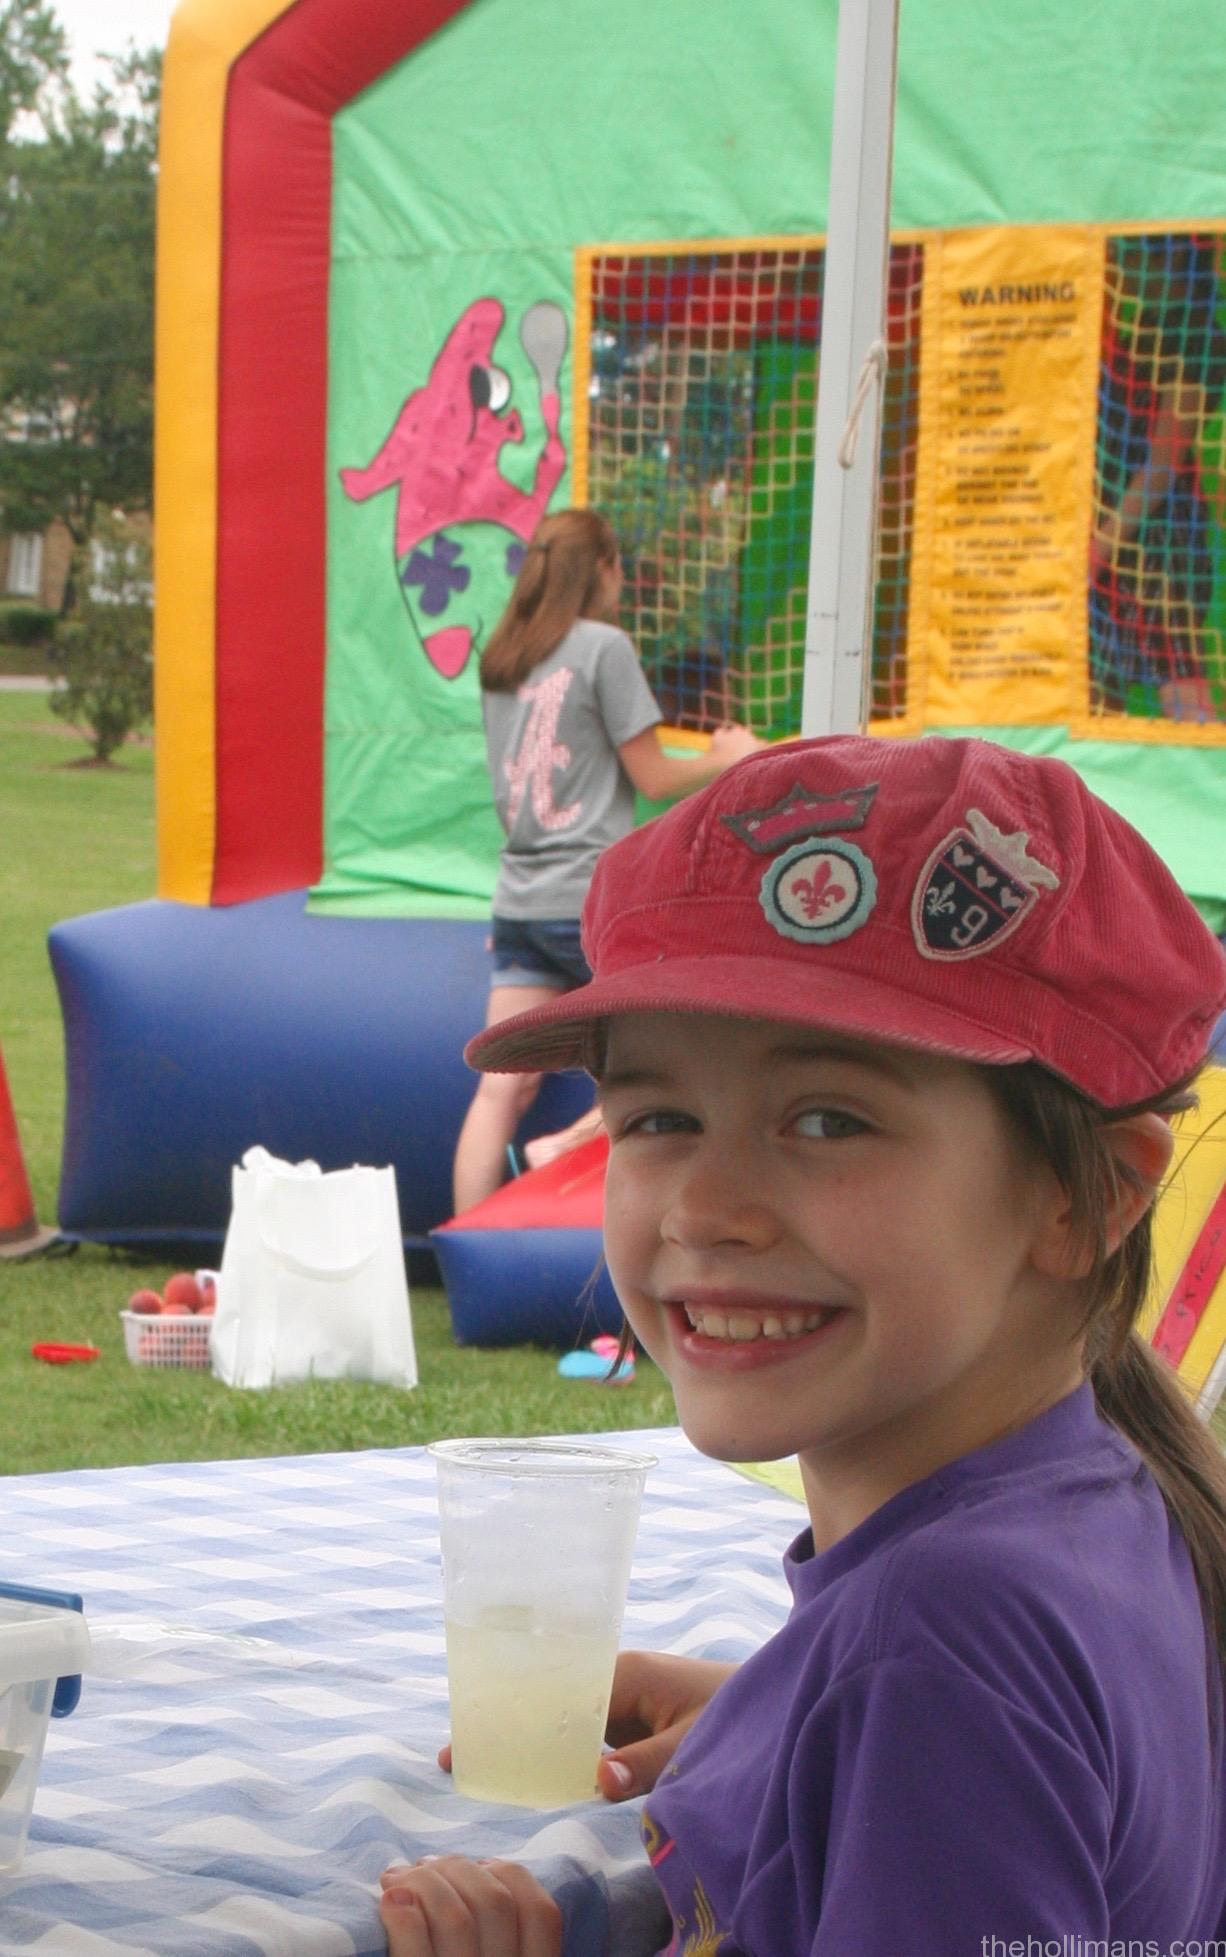 Lo Que Aprendí En Los Juegos Infantiles – Lessons From The Bouncy Castle